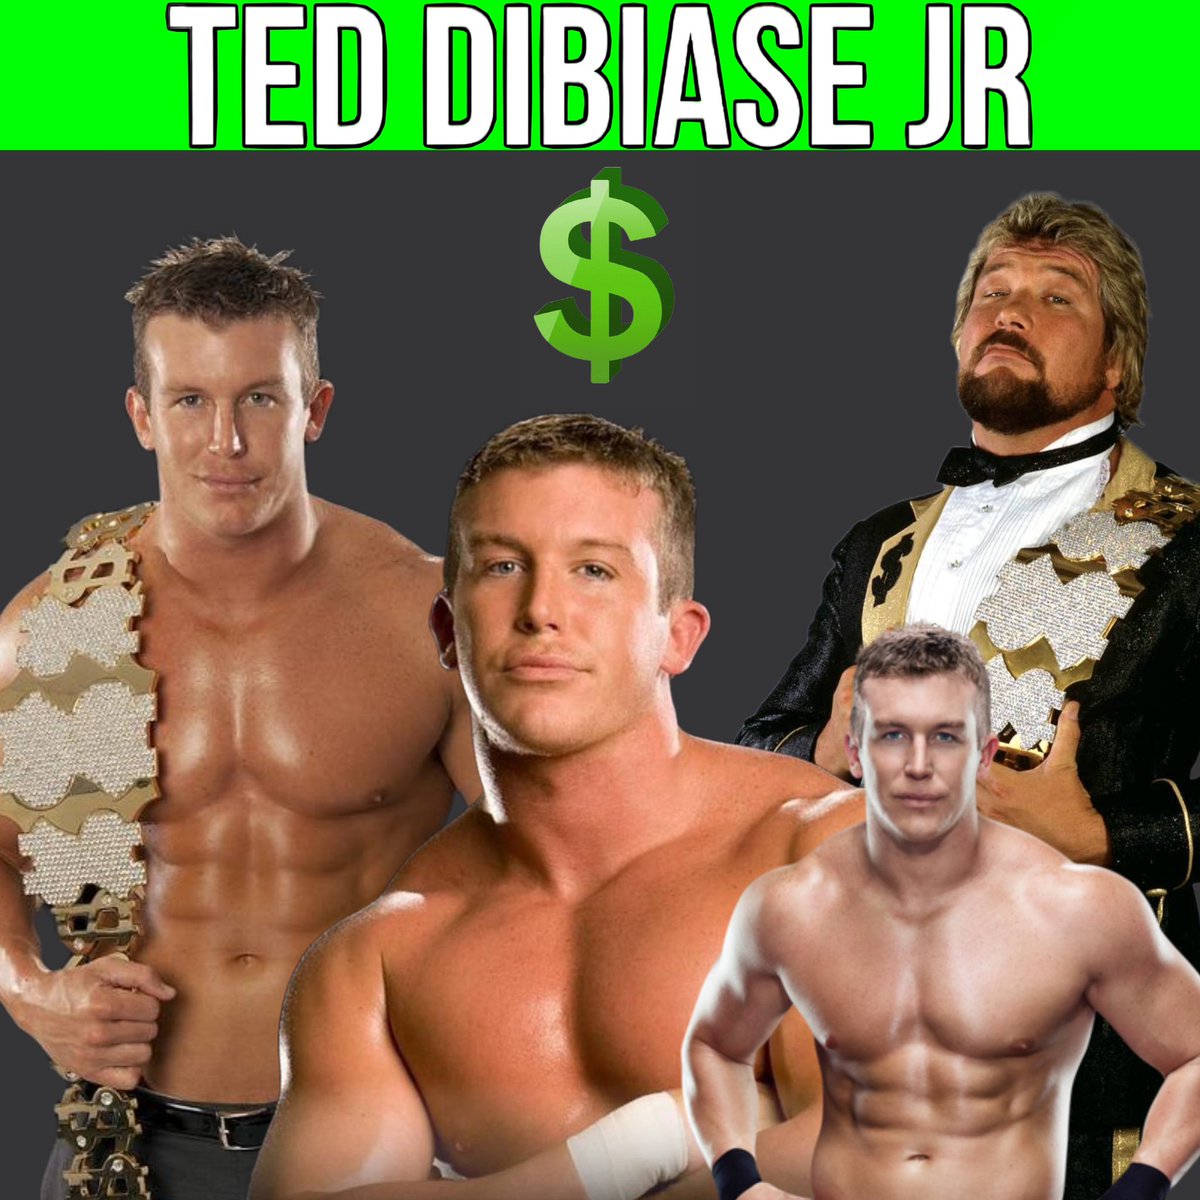 La ex estrella de #WWE Ted DiBiase Jr enfrenta hasta 45 años de prisión:

Theodore Marvin DiBiase Jr., fue acusado formalmente del robo de millones de dólares que estaban reservados para ayudar a familias necesitadas de Mississippi.

#TedDiBiaseJr #DiBiase #TedDiBiase #NEWS.